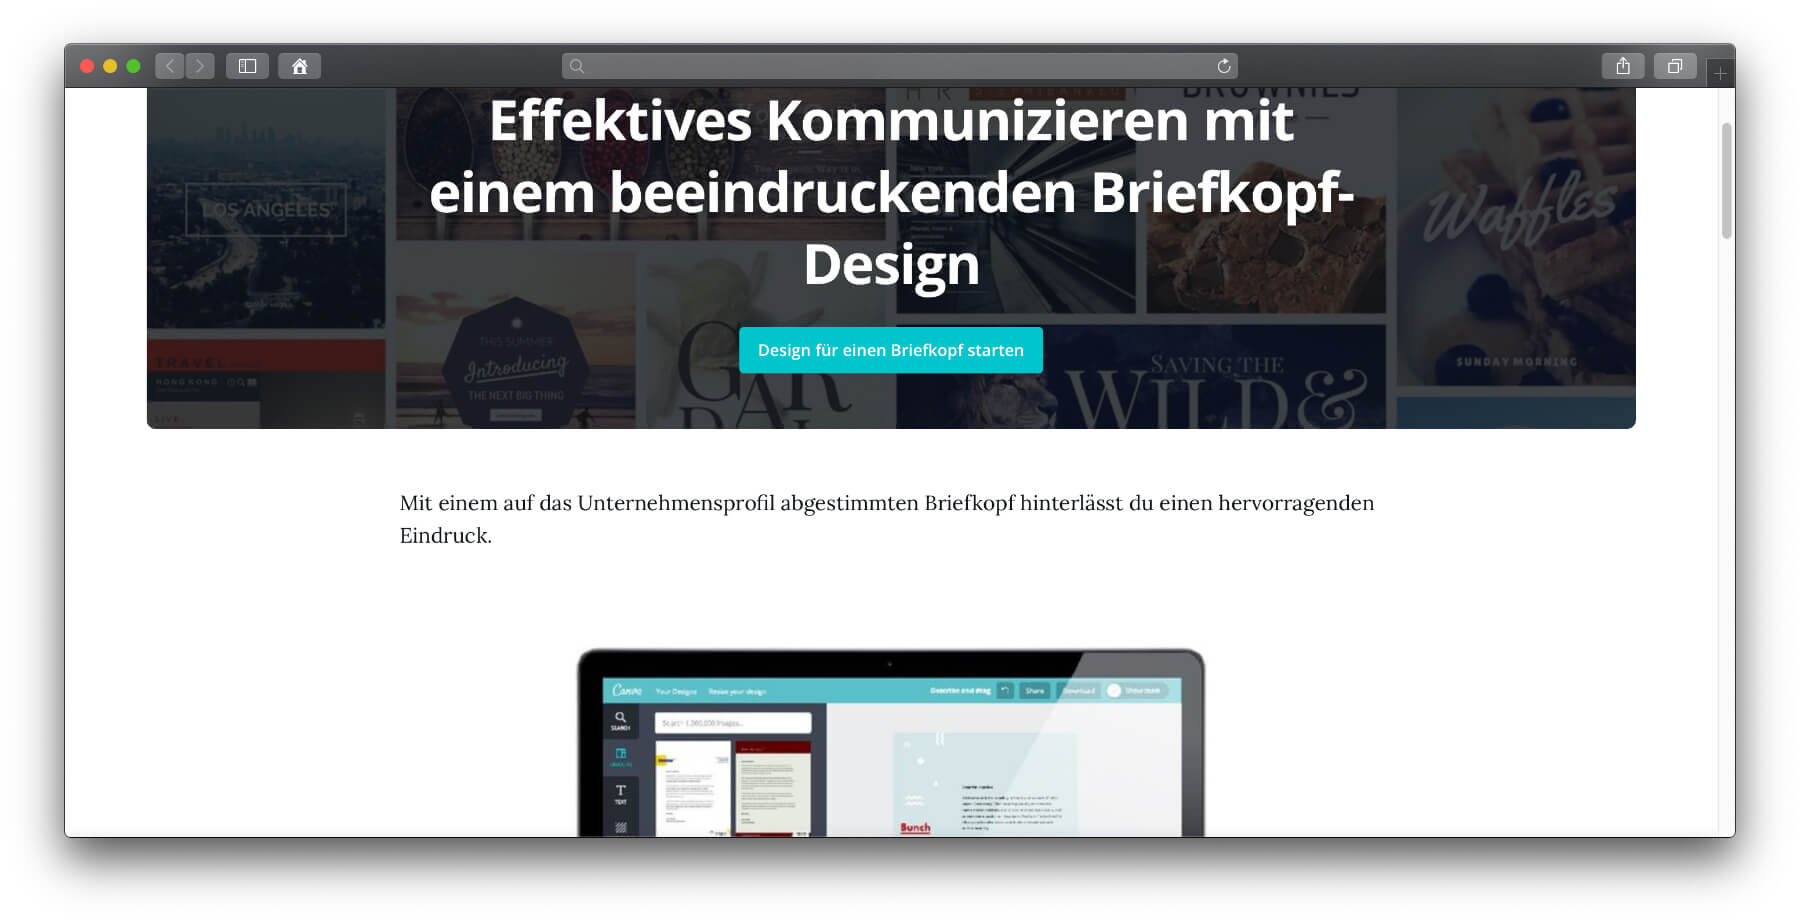 Briefkopf Online Erstellen Und Eigenes Briefpapier Designen Sir Apfelot